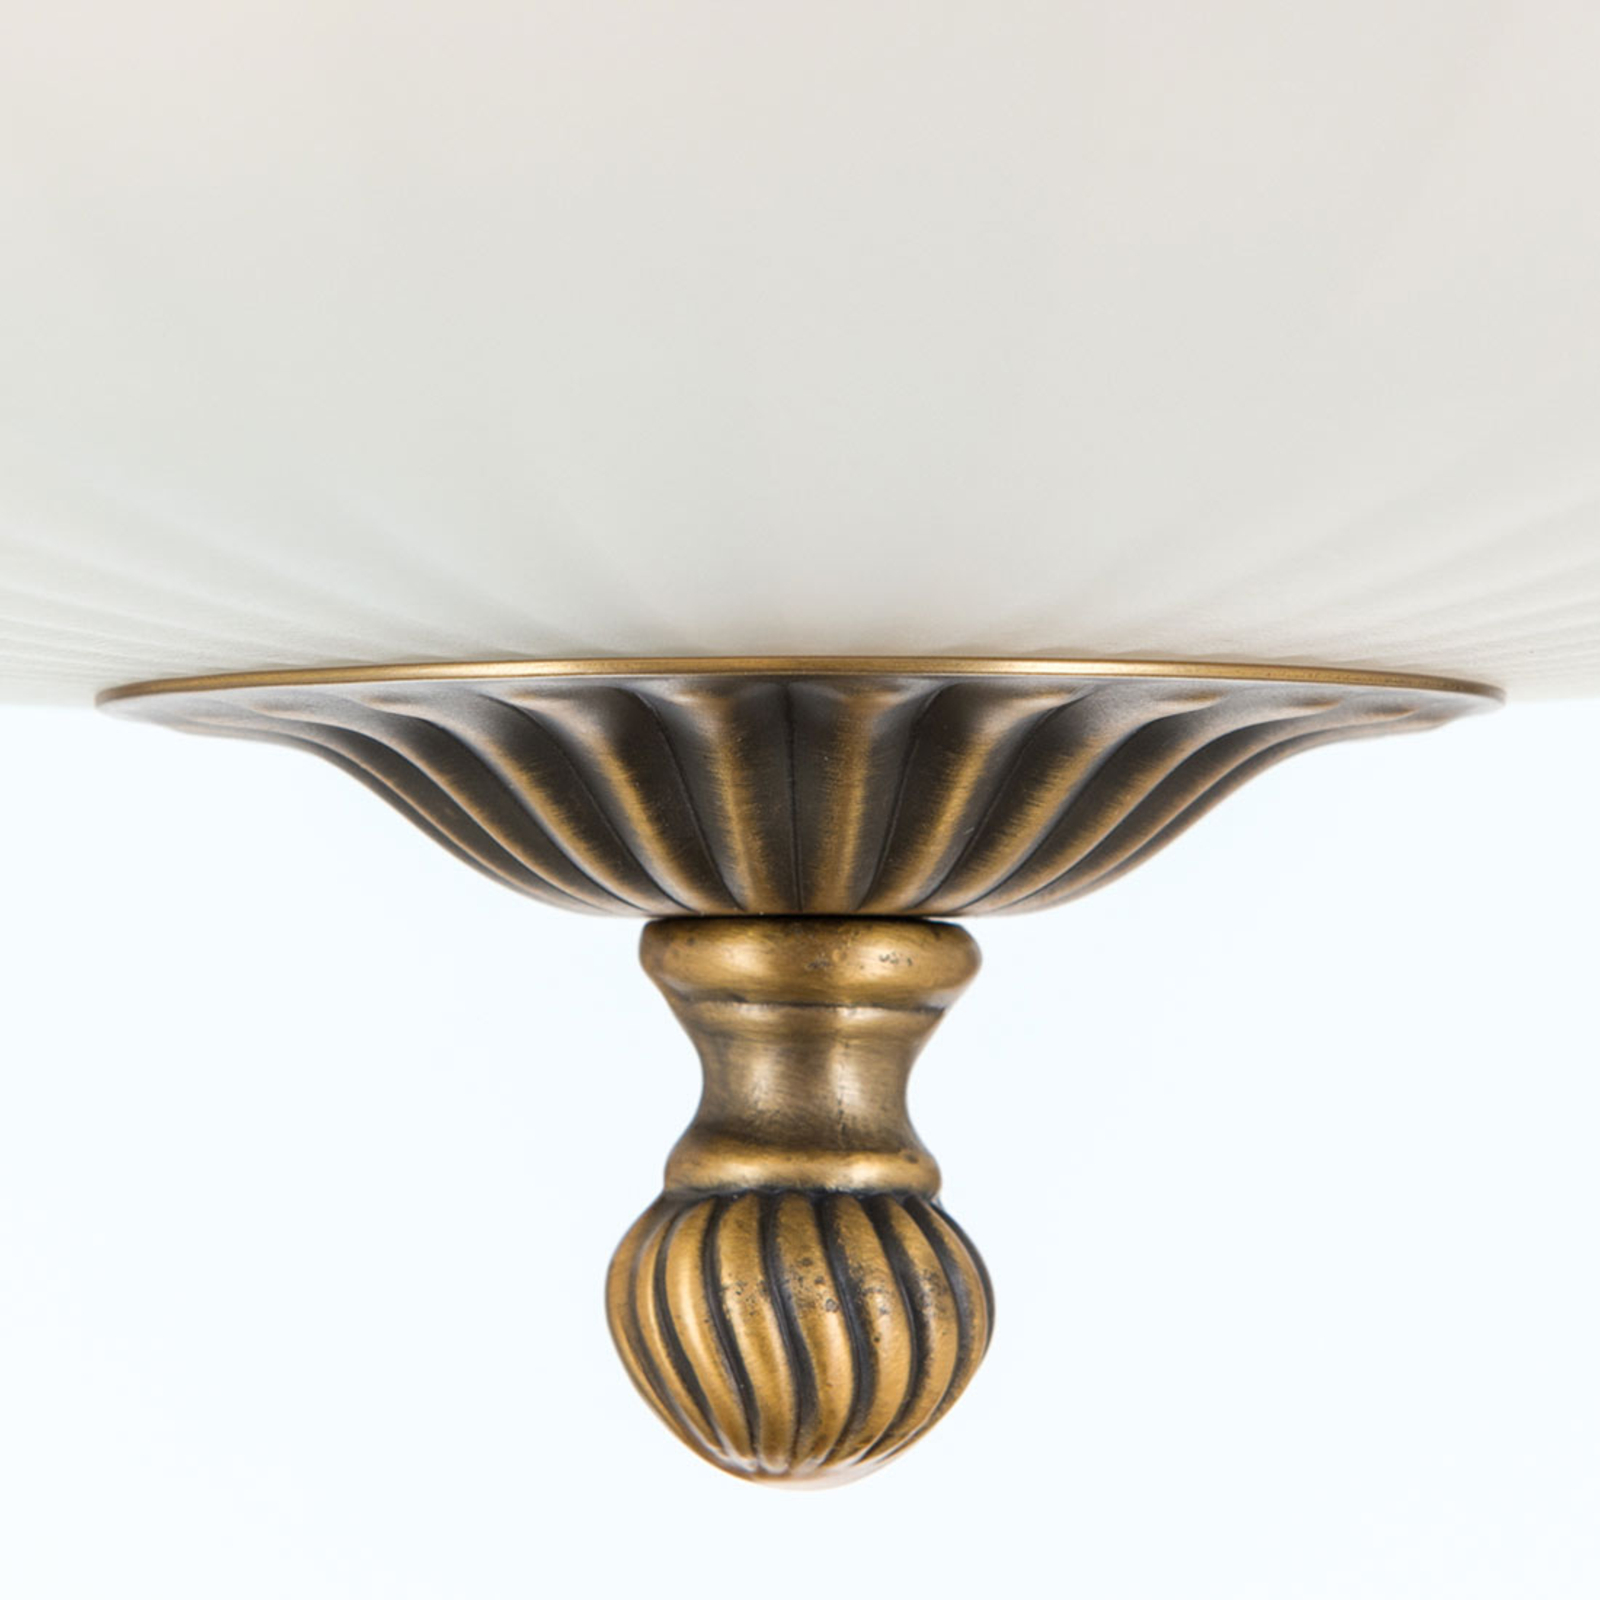 Rocca semi-flush ceiling light, diameter 43cm